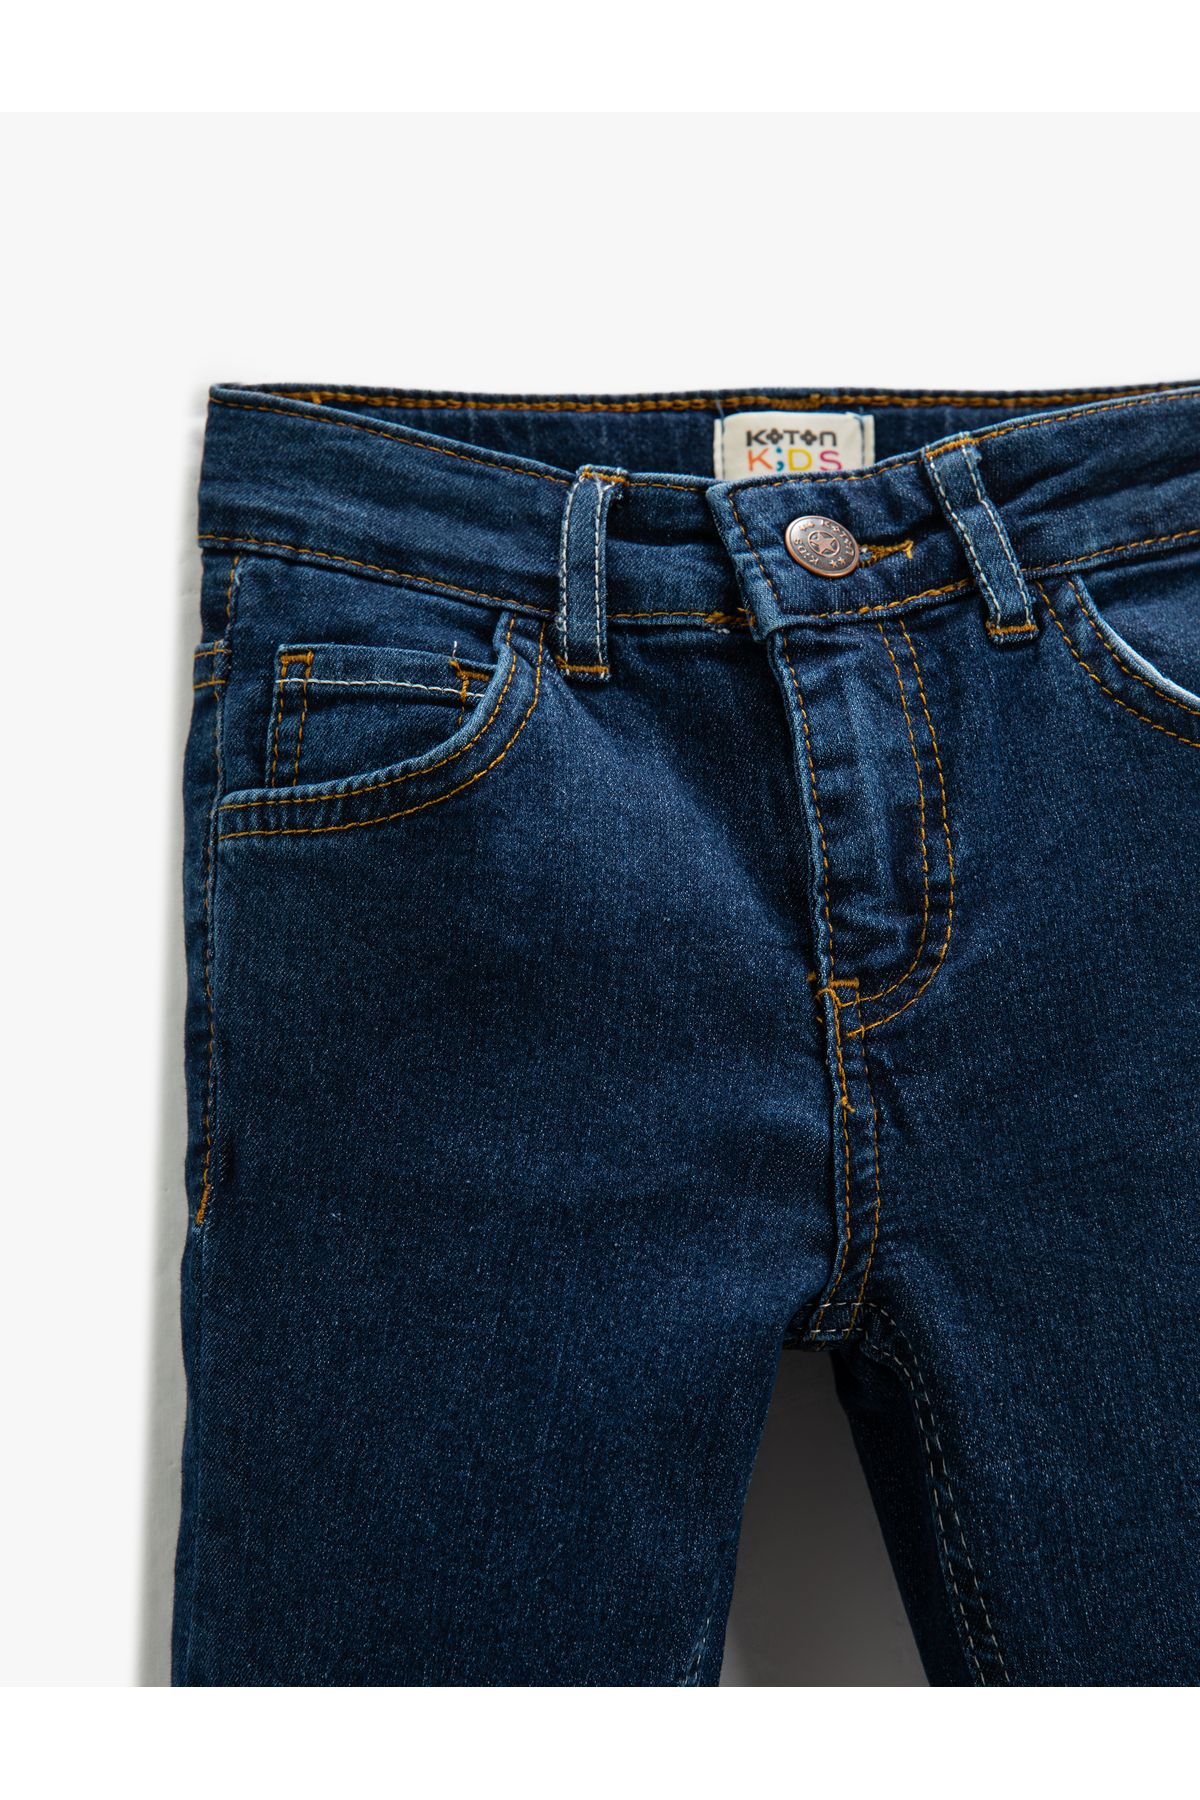 Koton شلوار جین تنگ - با کمر الاستیک قابل تنظیم